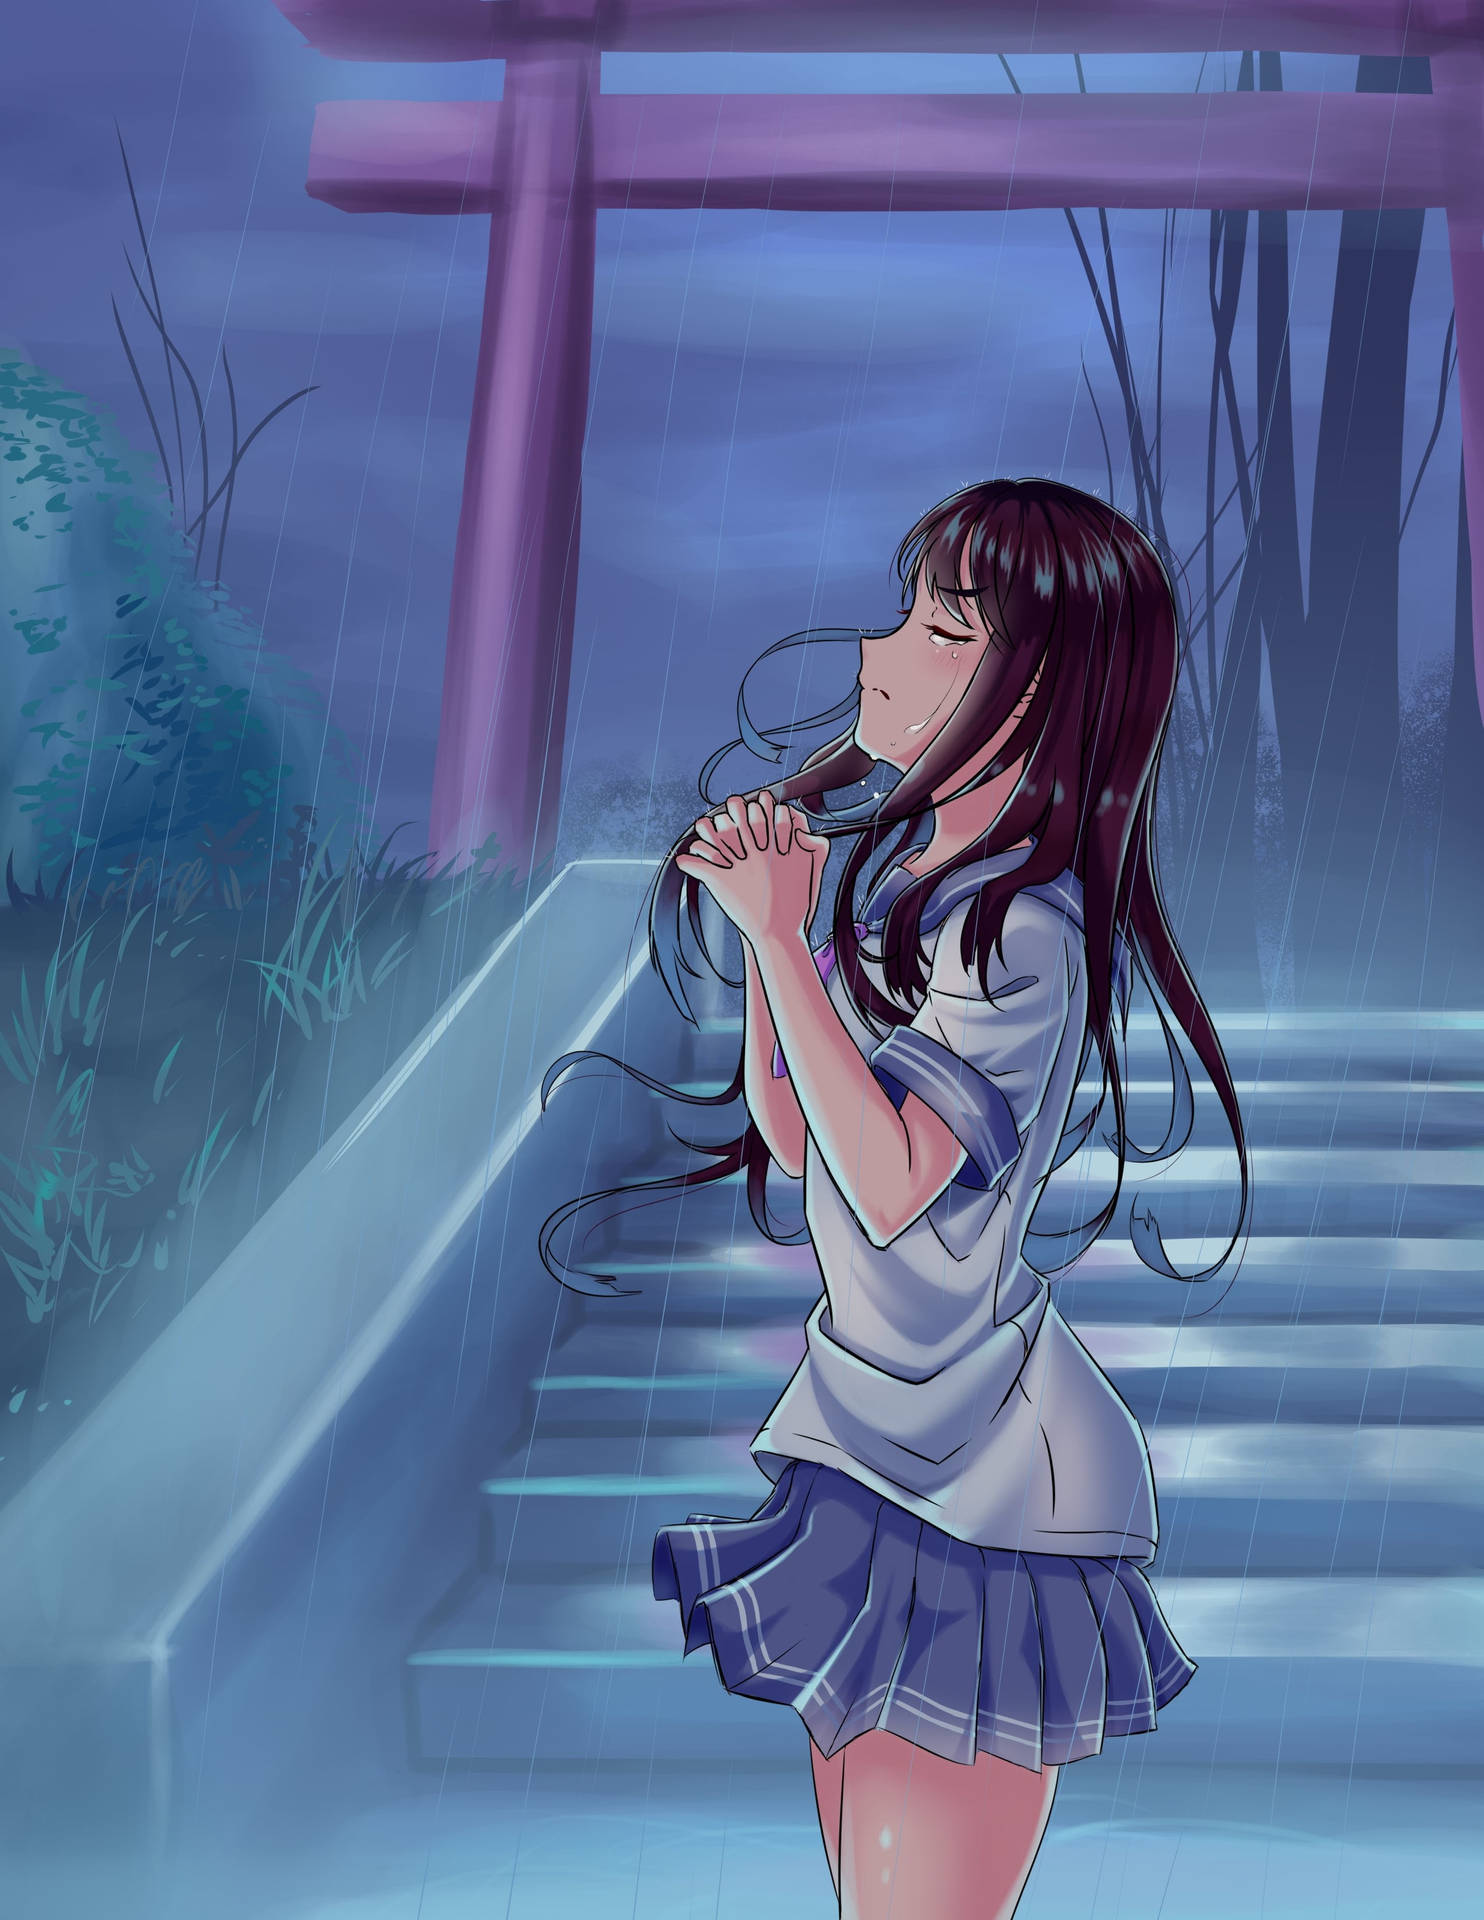 Praying Sad Aesthetic Anime Girl Wallpaper